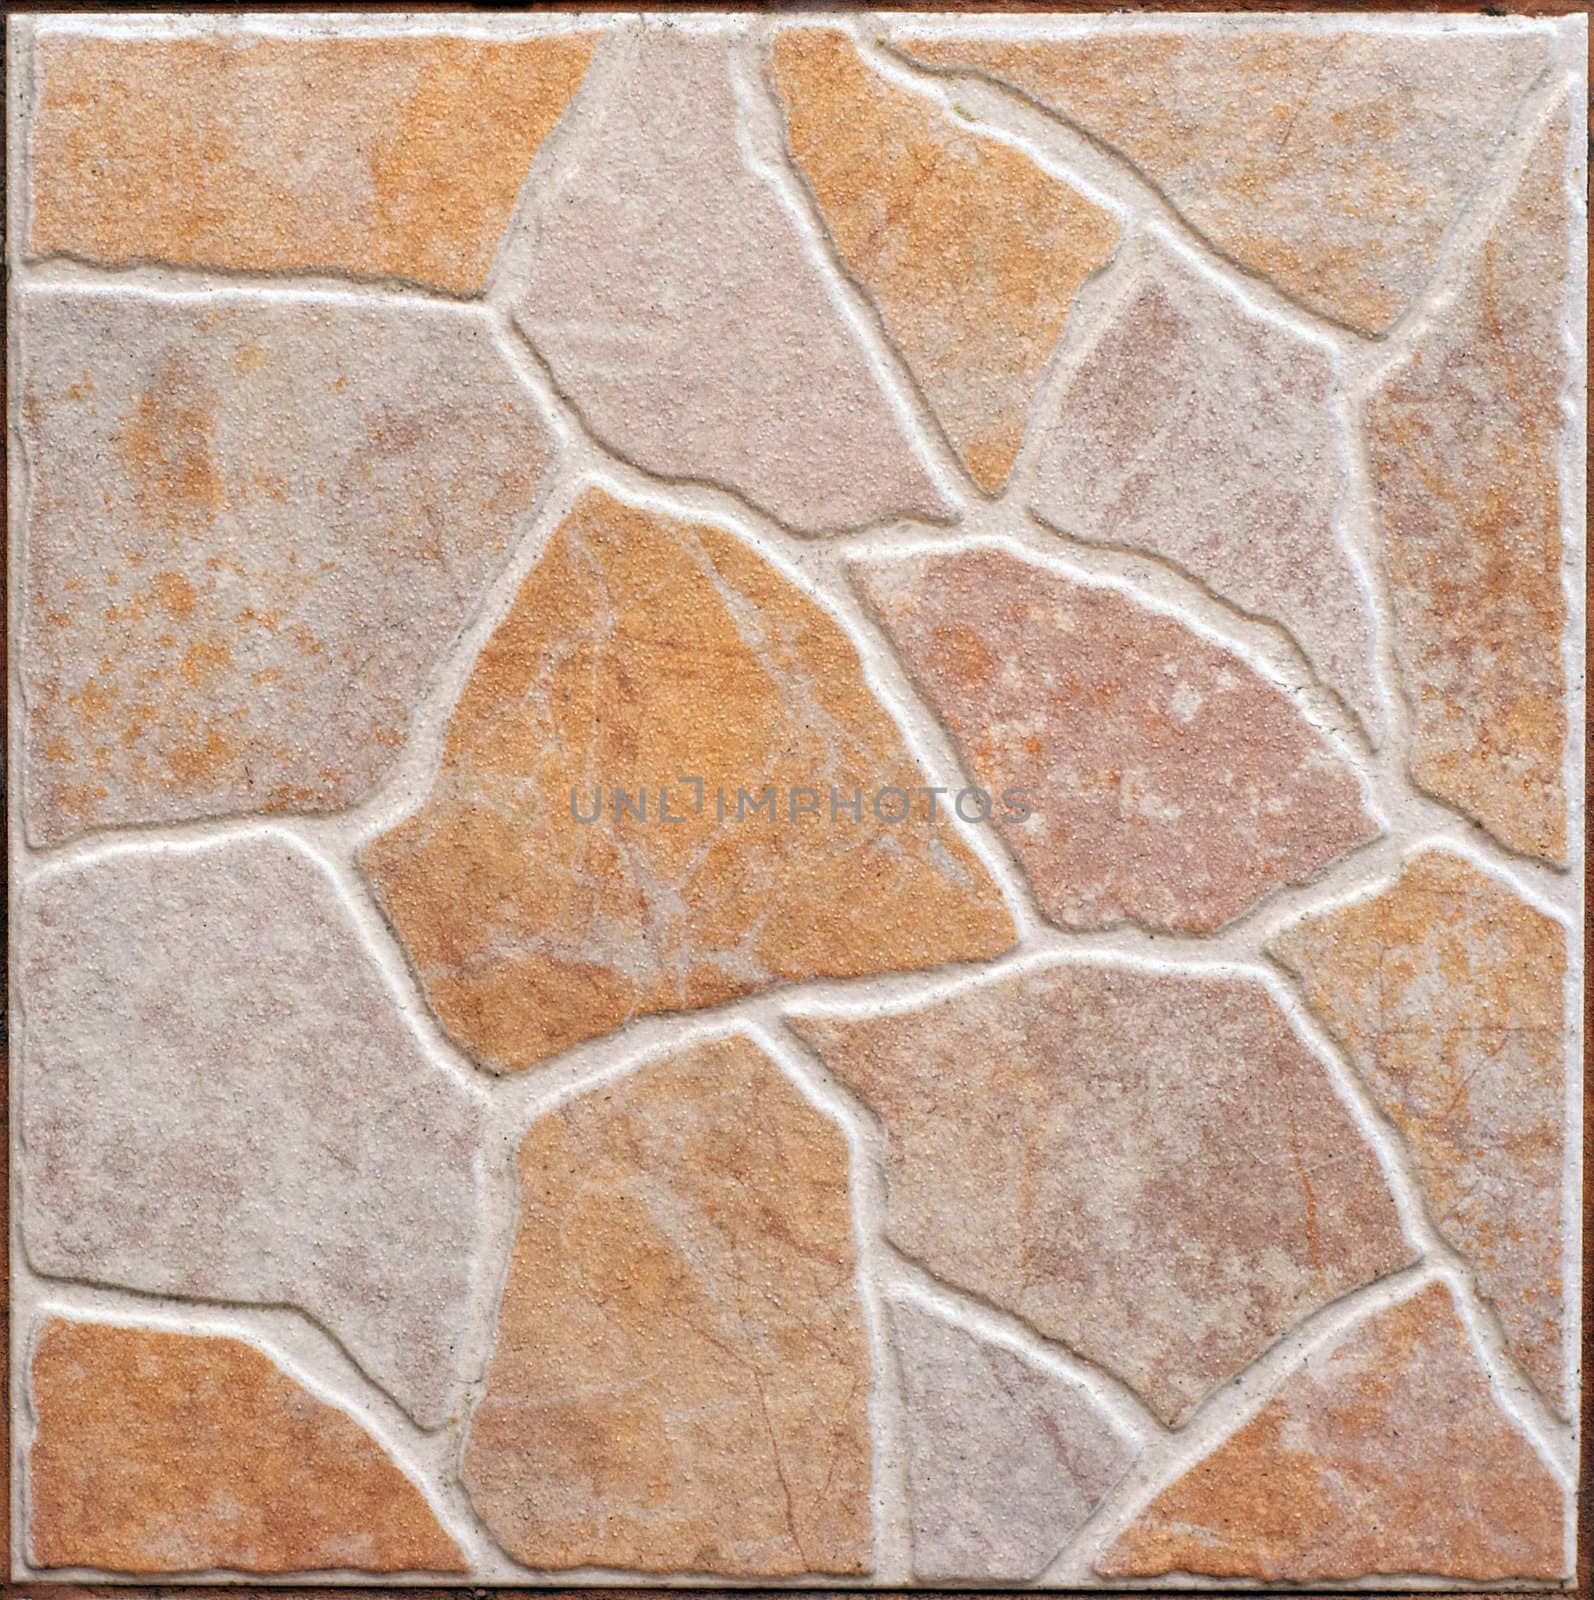 square brown decorative ceramic slab texture